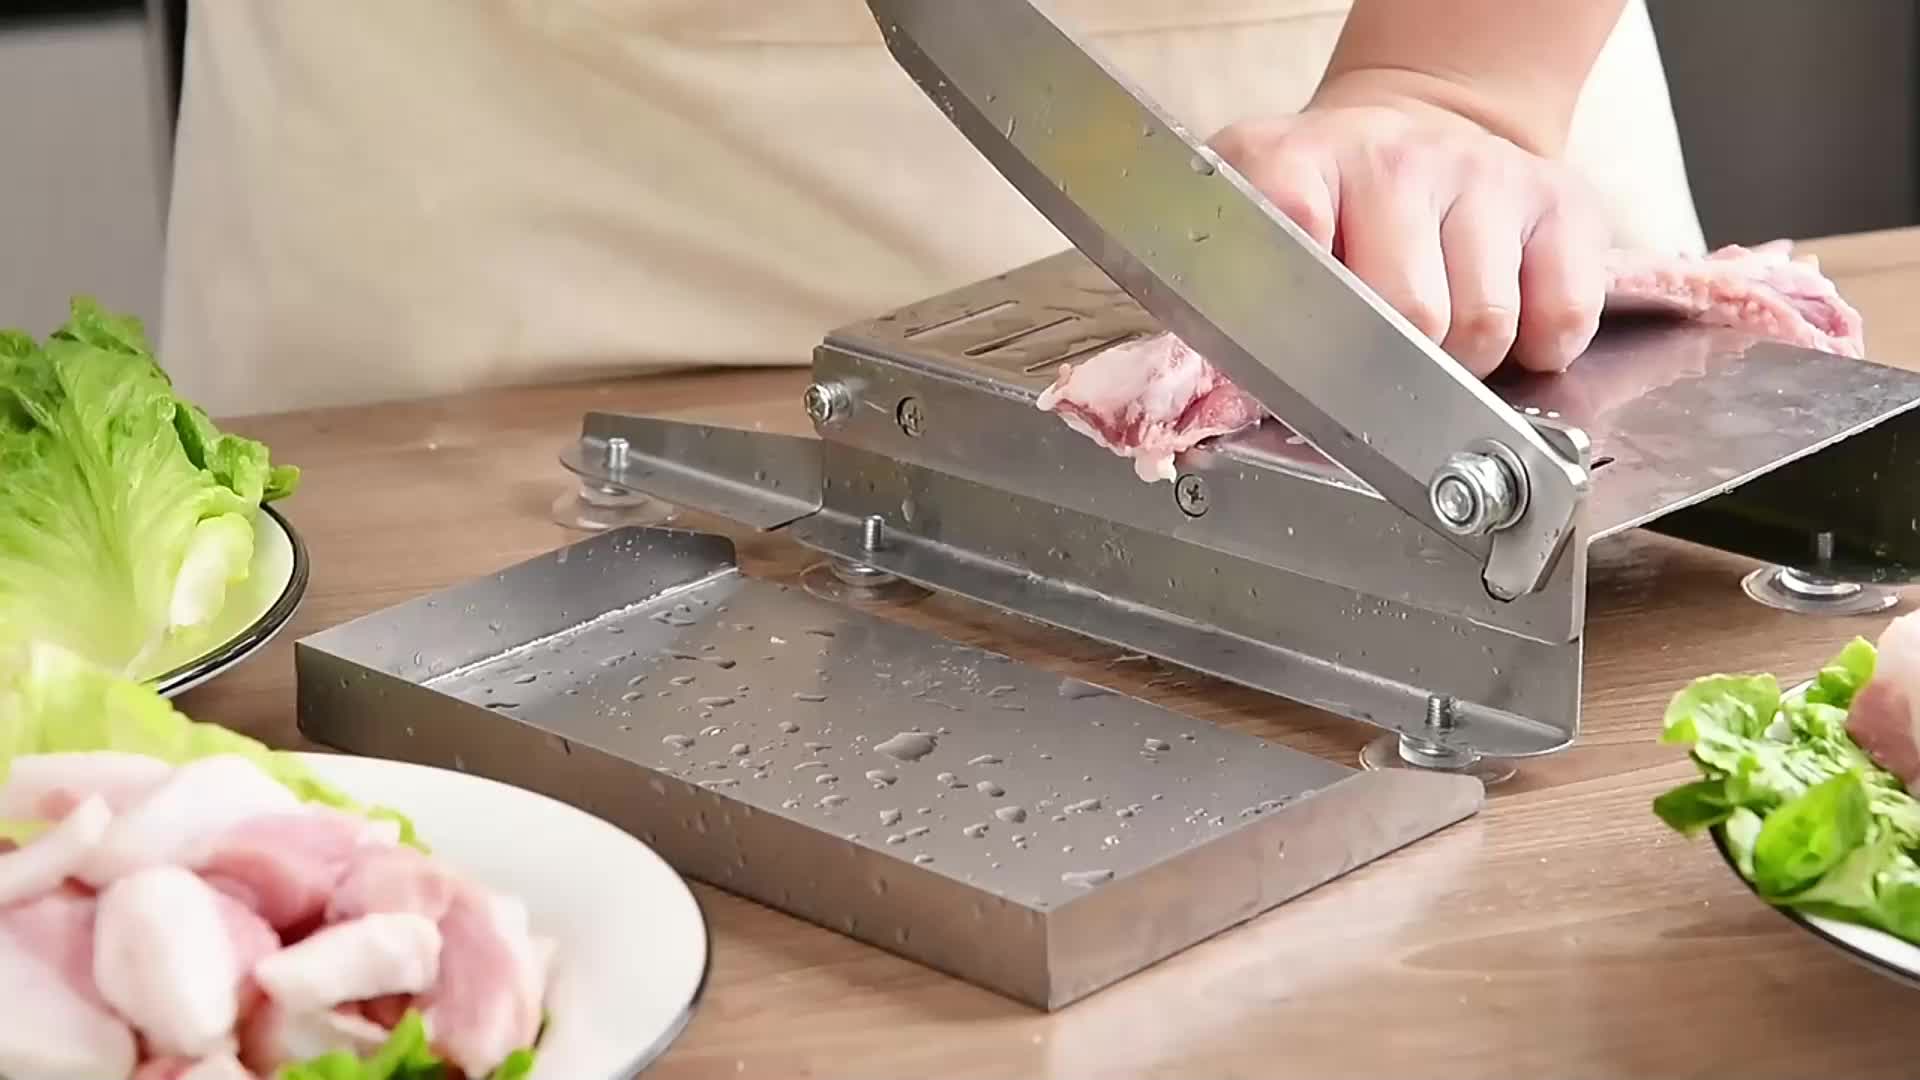  Manual Meat Cutter Machine, Ribs Meat Chopper